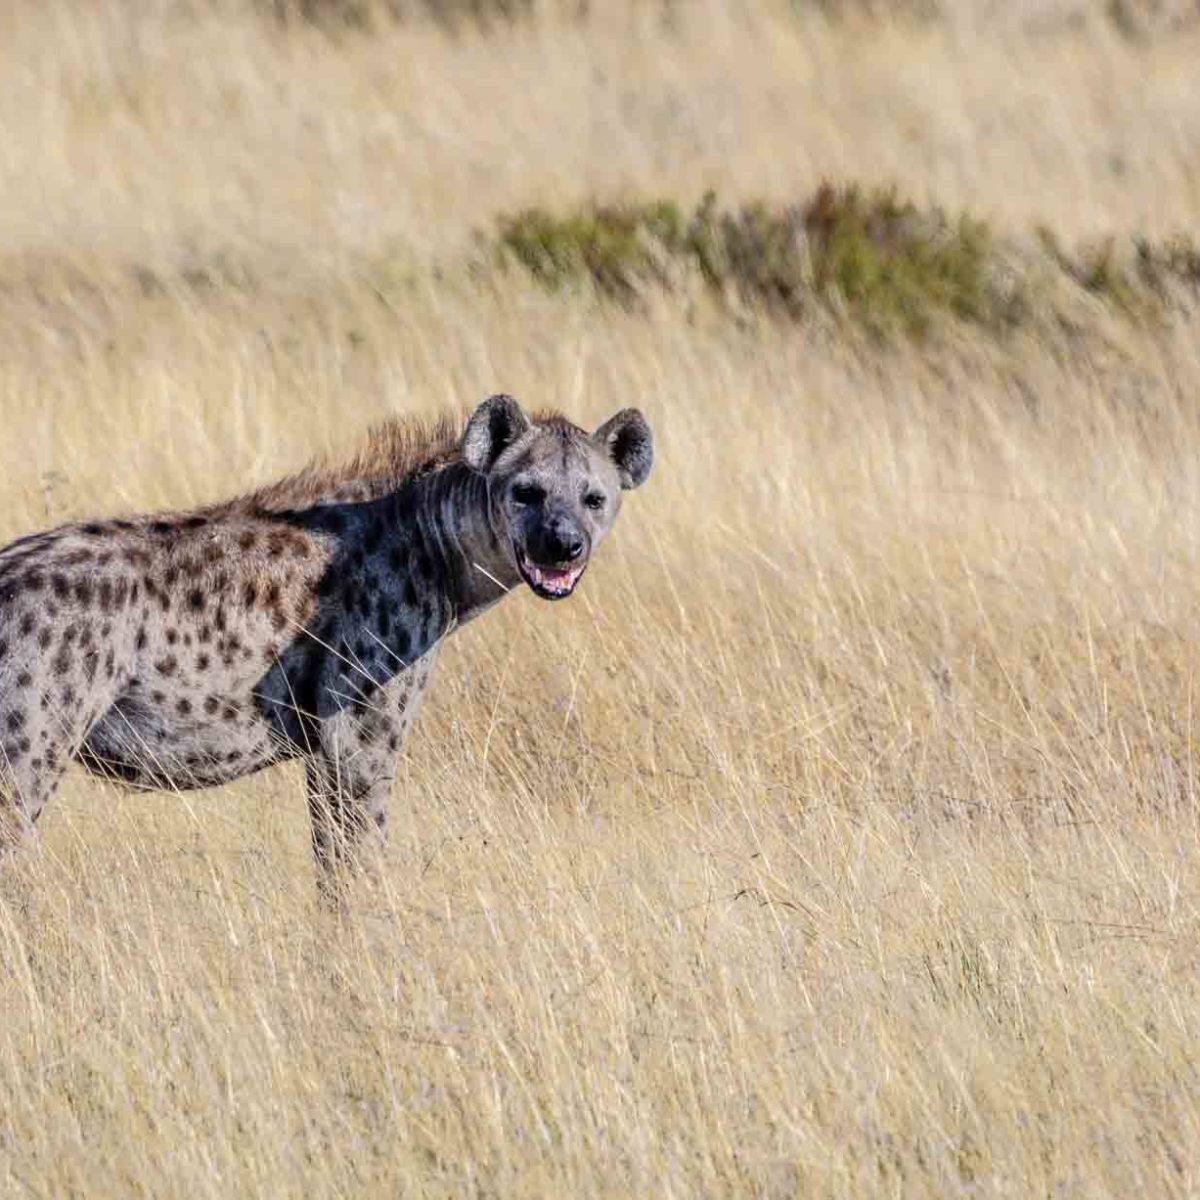 can a hyena kill a dog